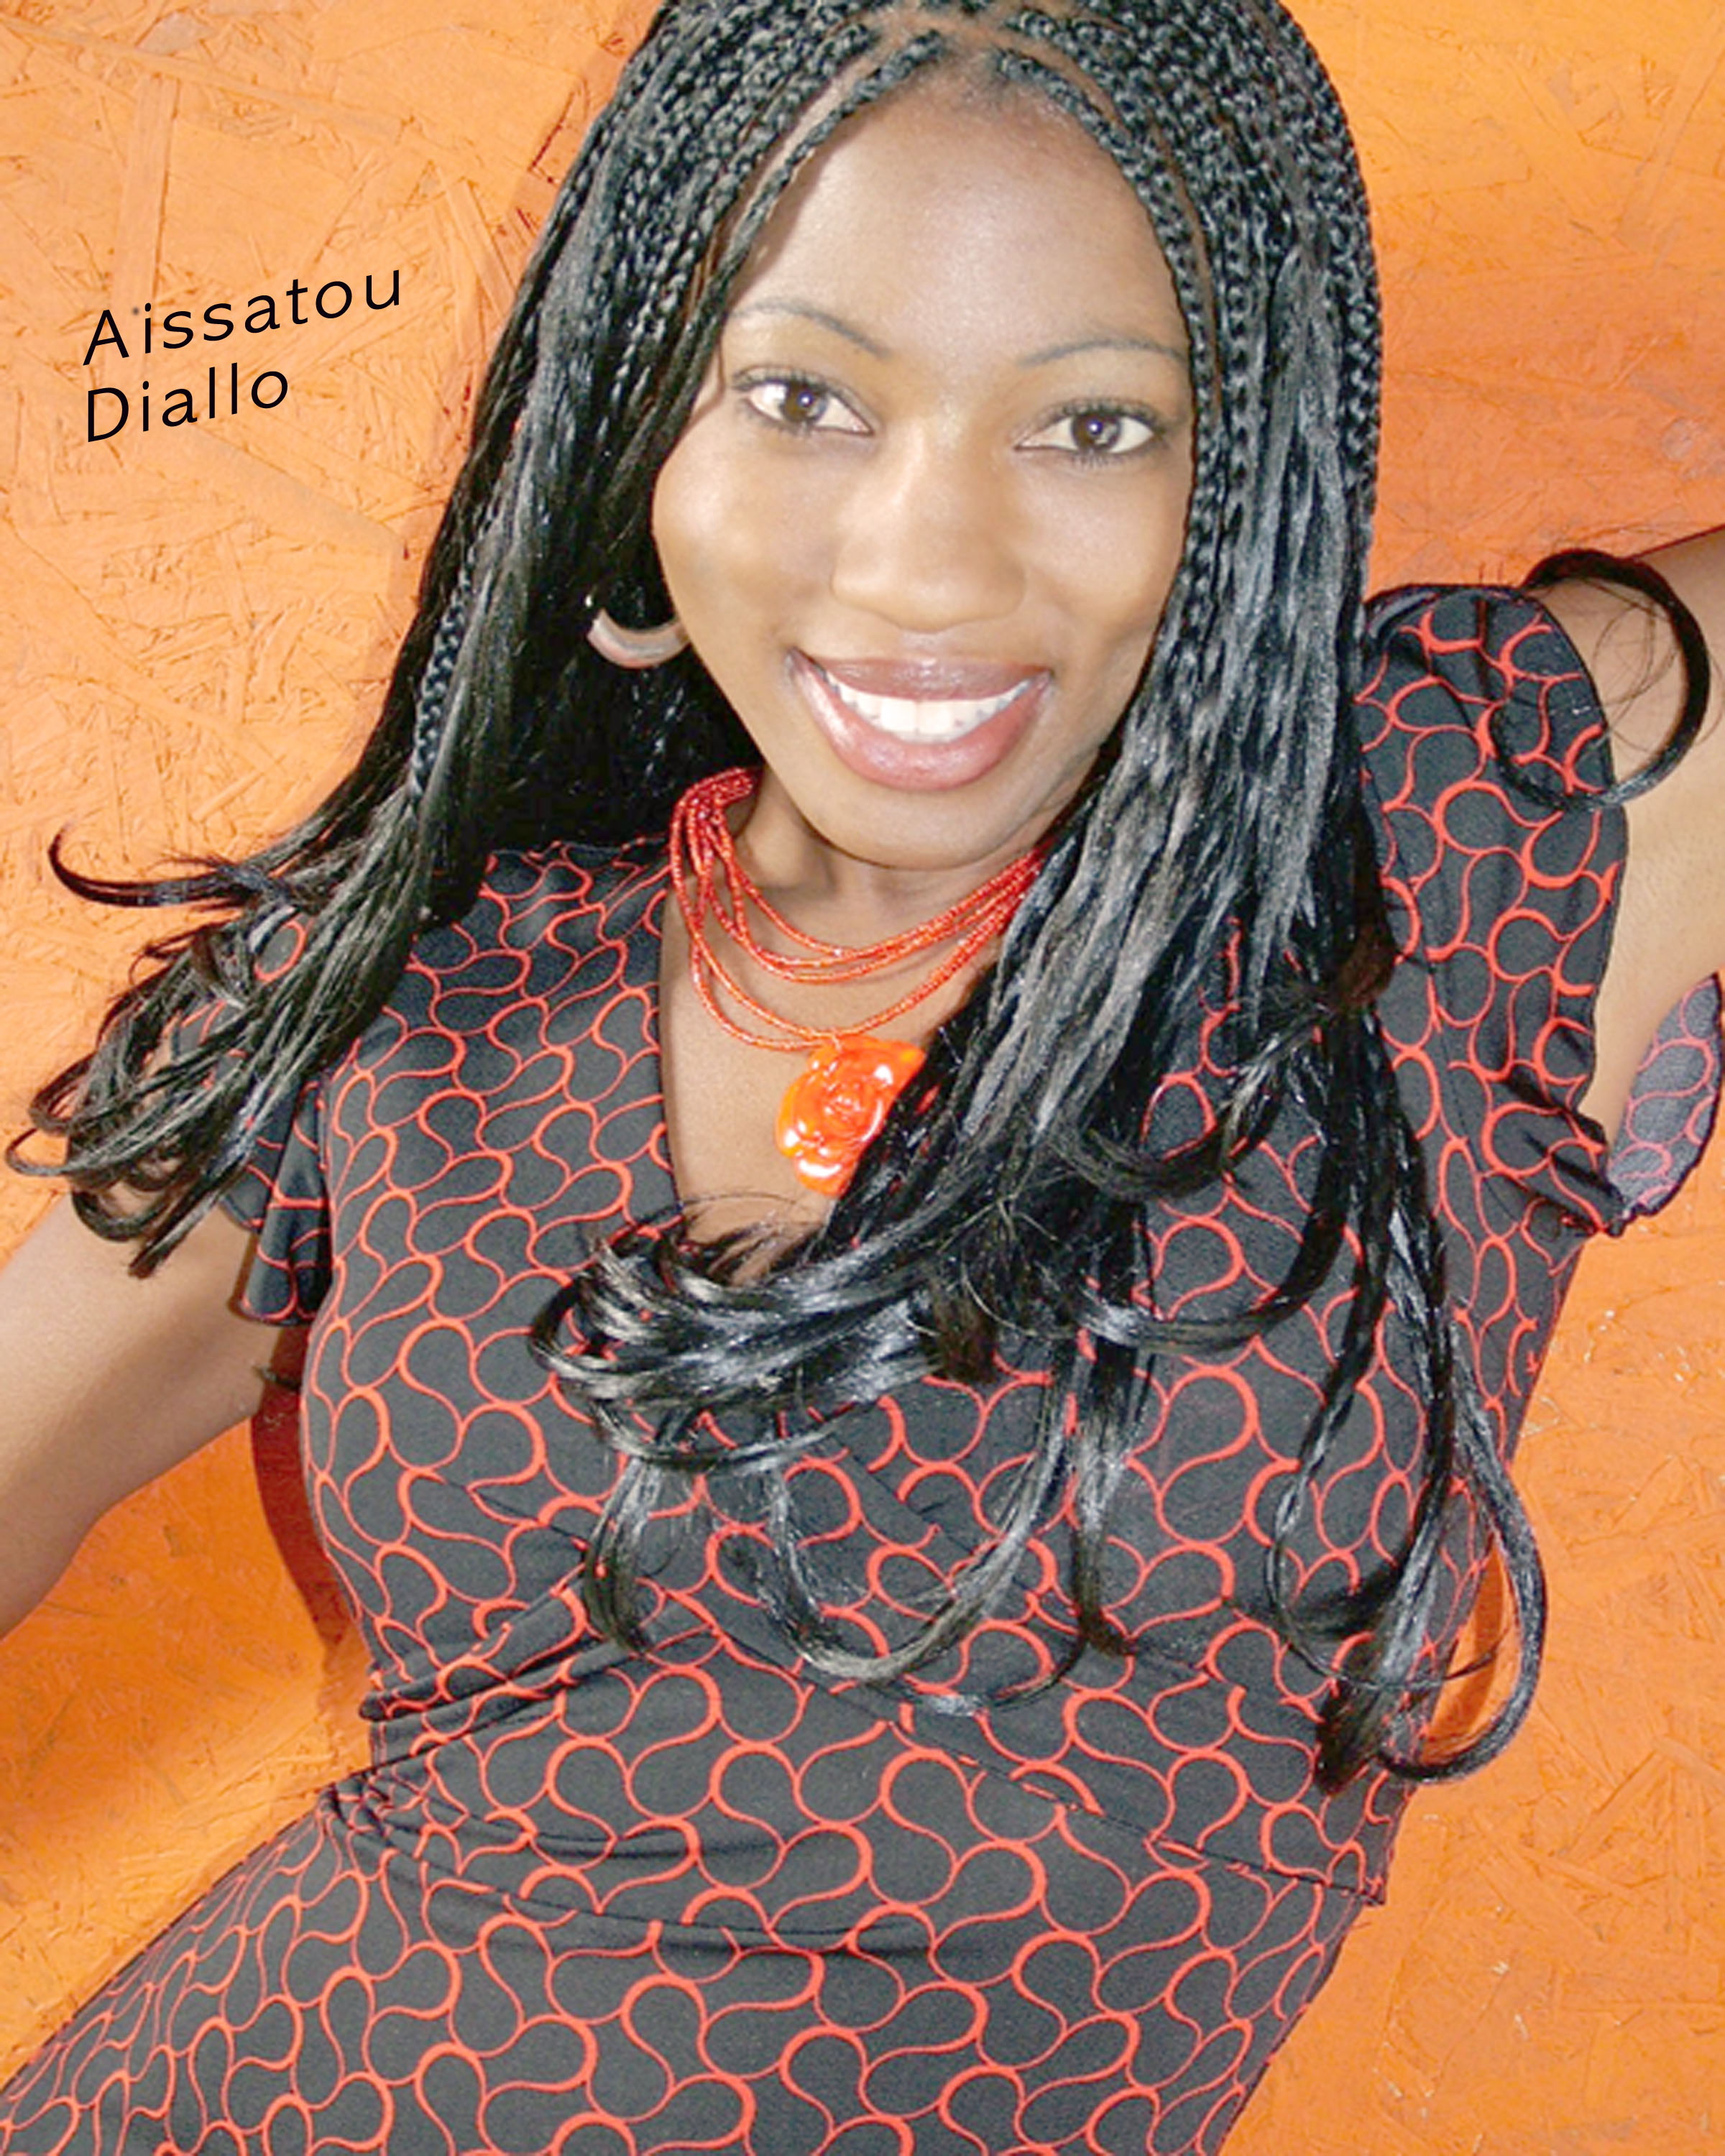 Aissatou Diallo